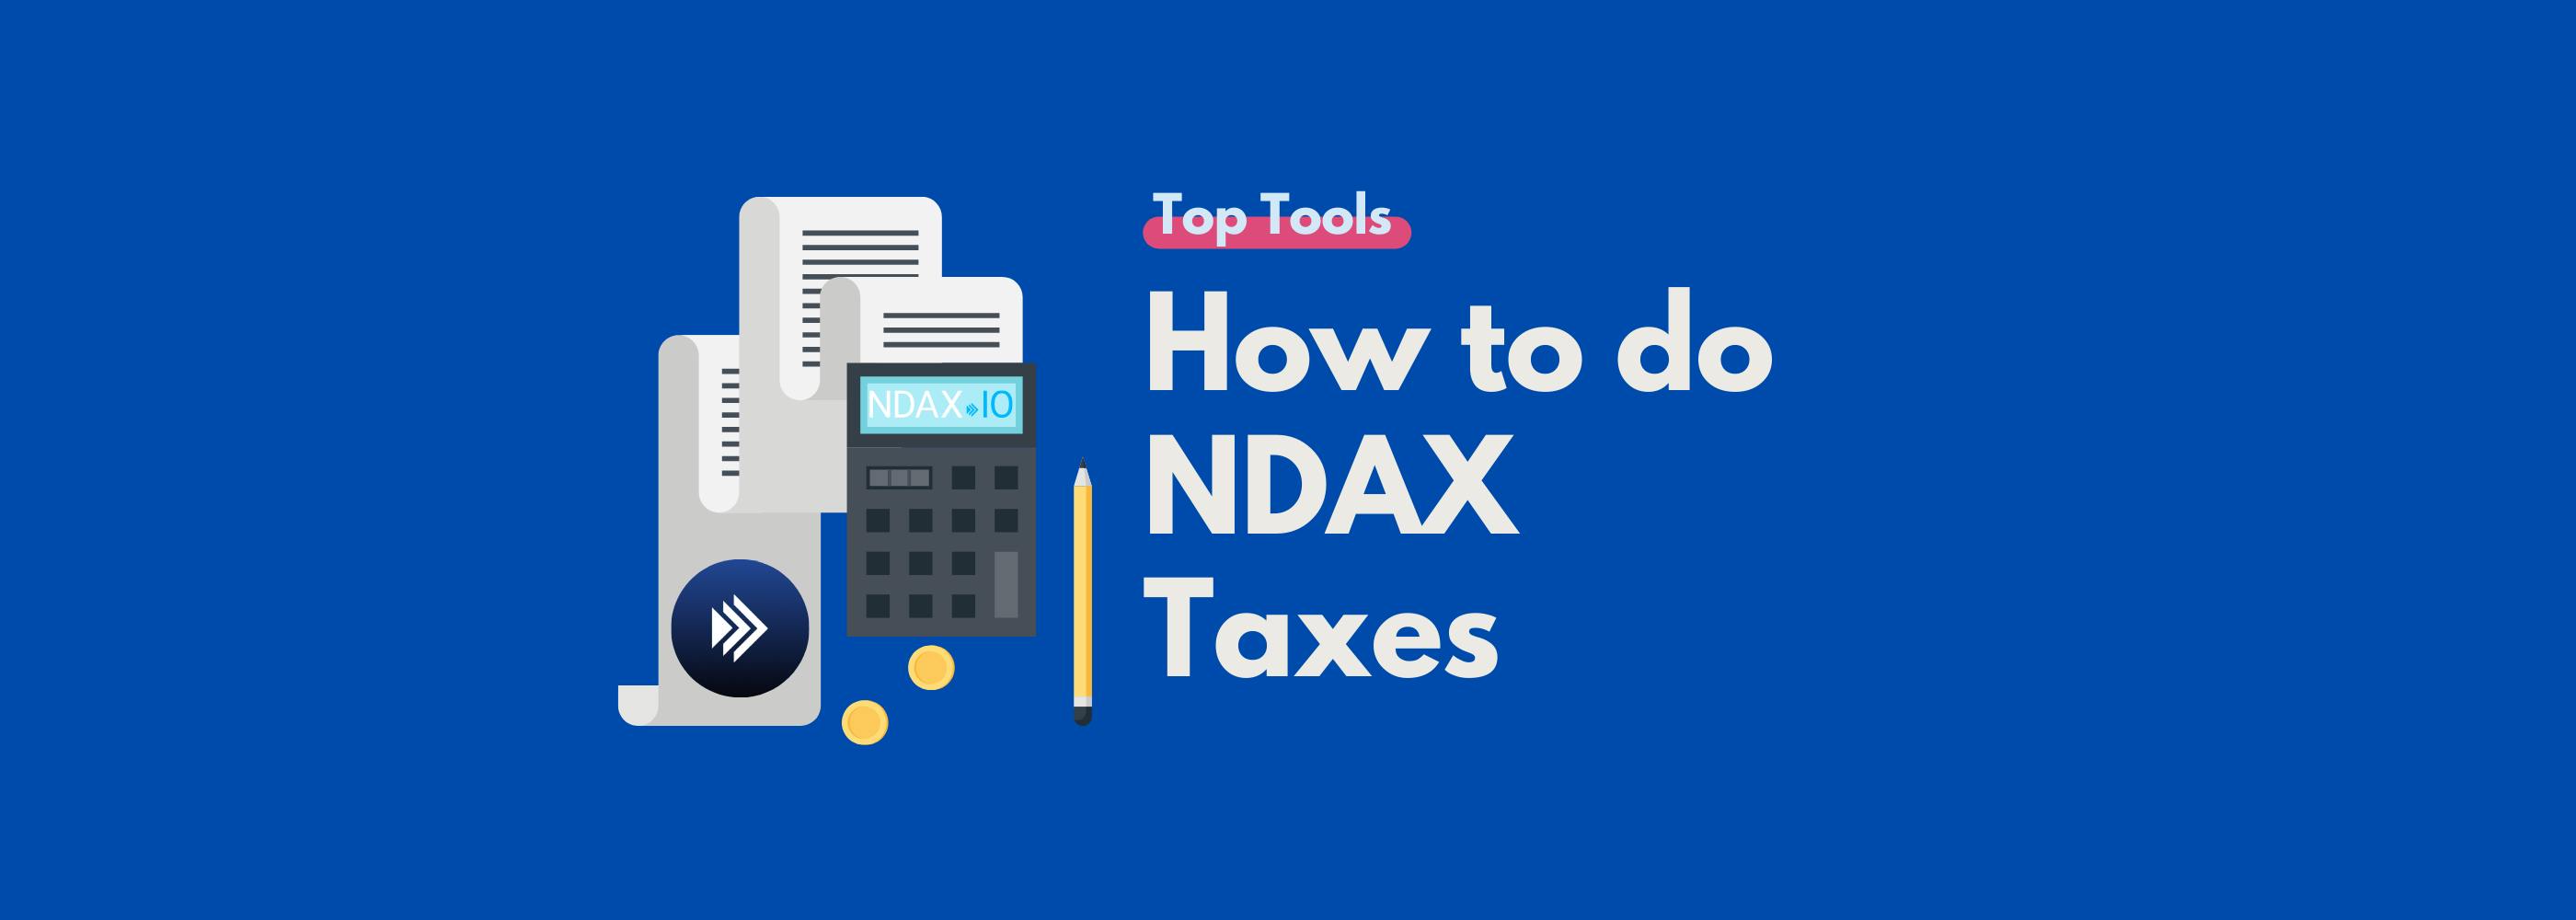 NDAX Taxes